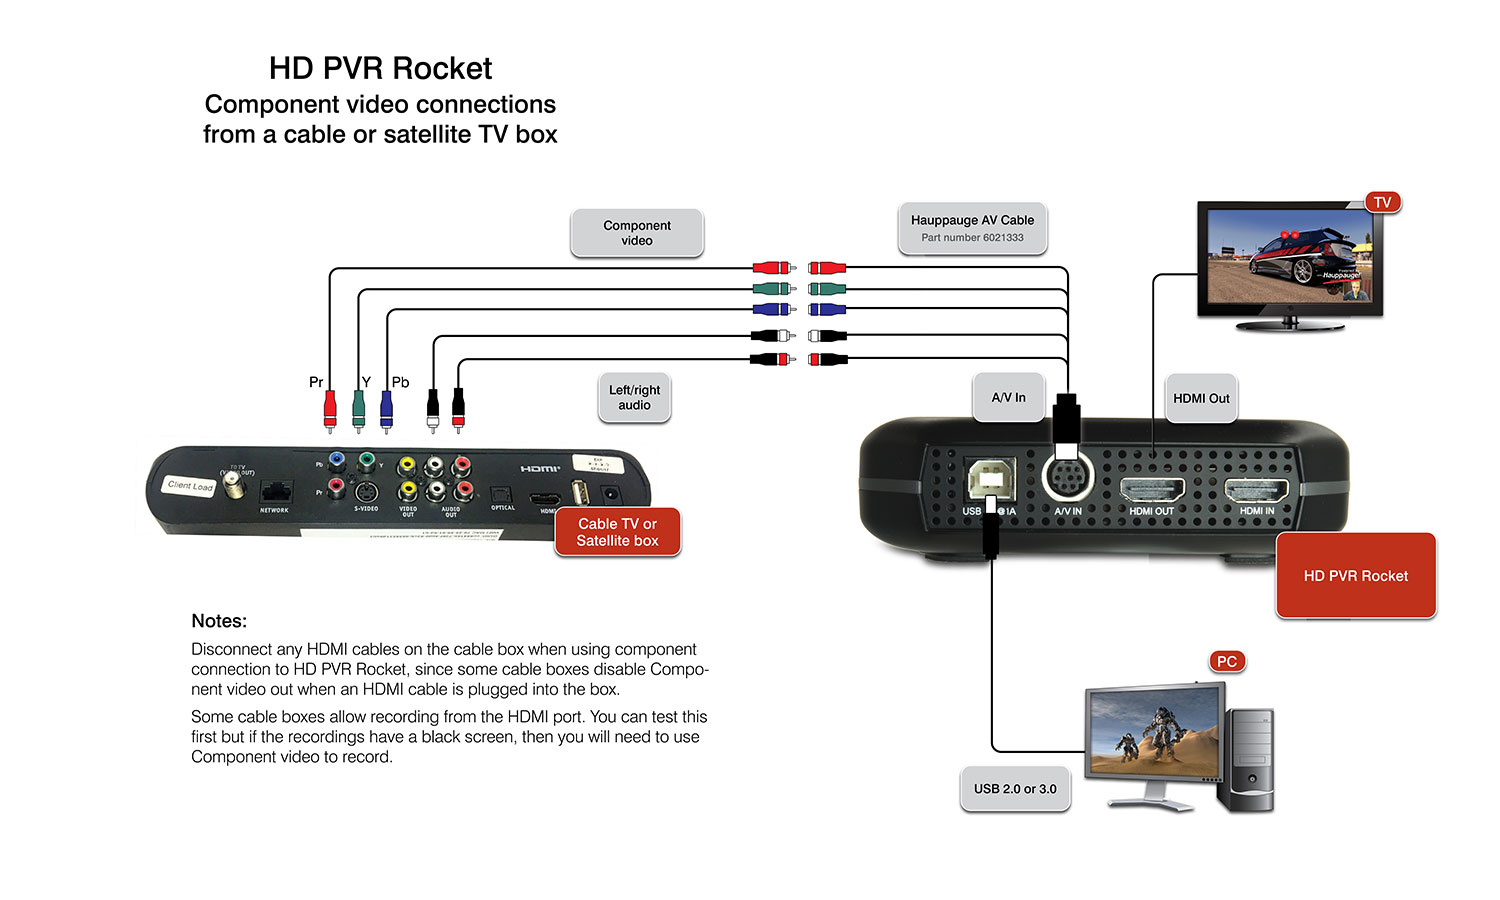 Hauppauge UK | HD PVR Rocket Product Description